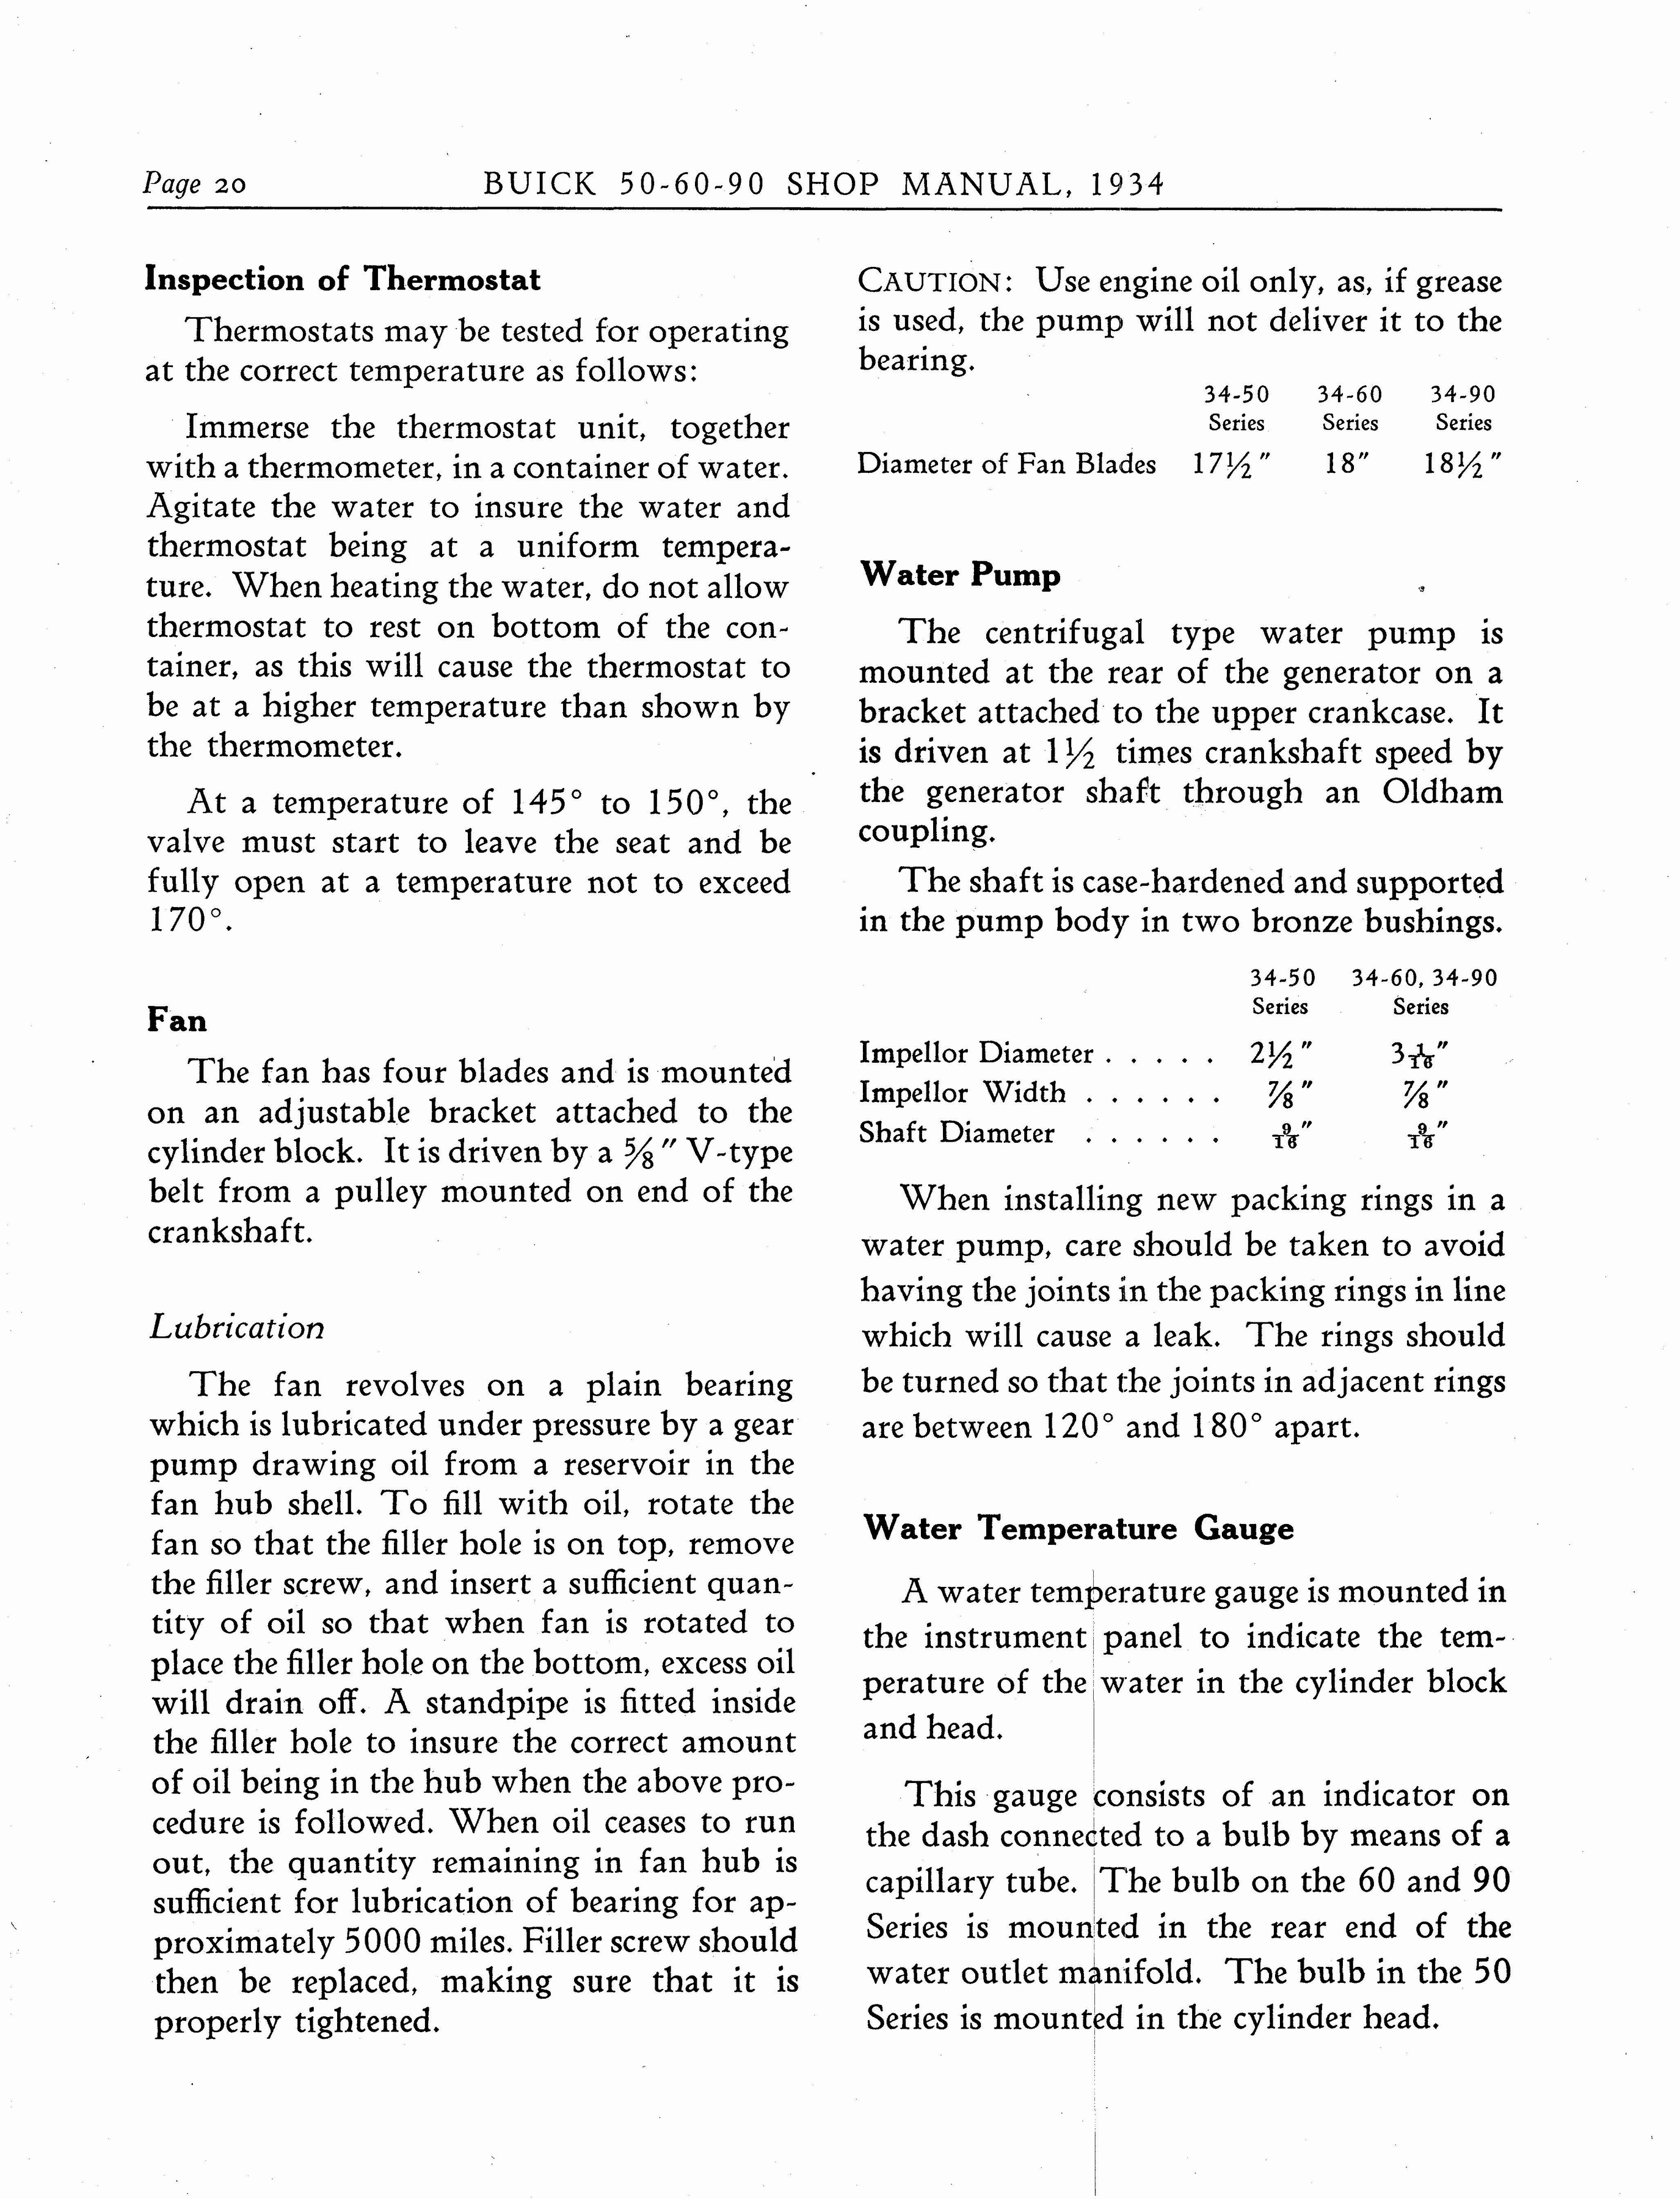 n_1934 Buick Series 50-60-90 Shop Manual_Page_021.jpg